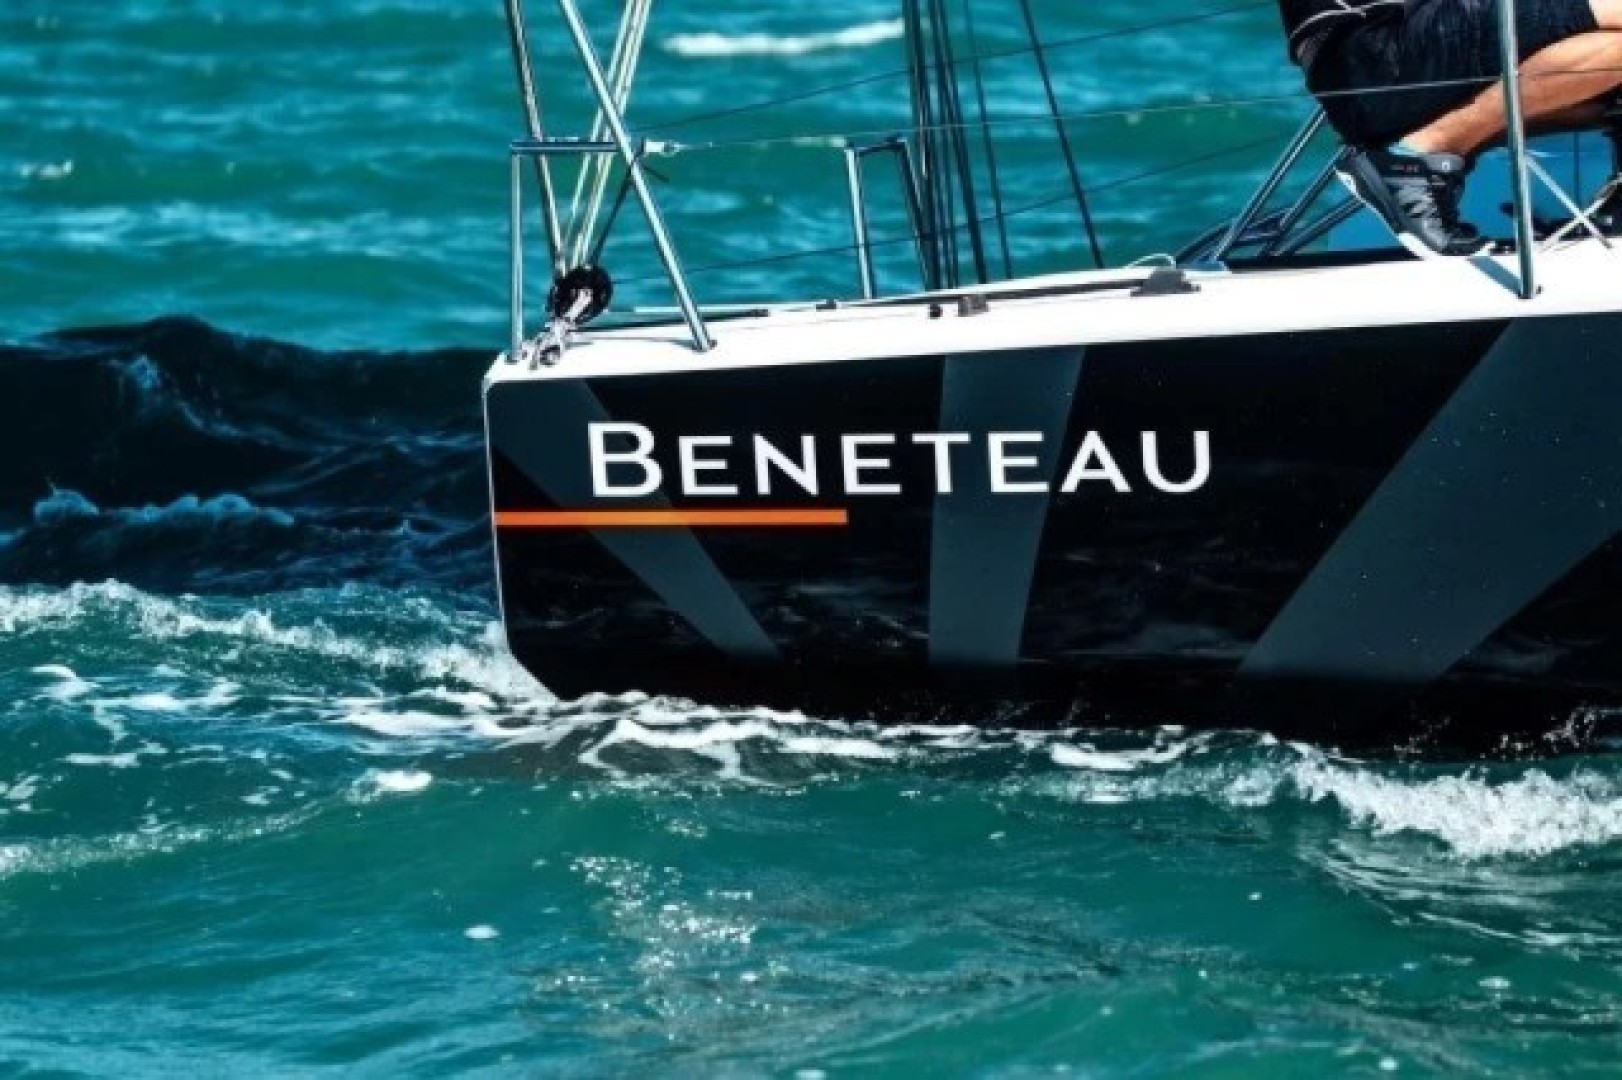 Groupe Beneteau: sustainable growth and profitability forecasts raised